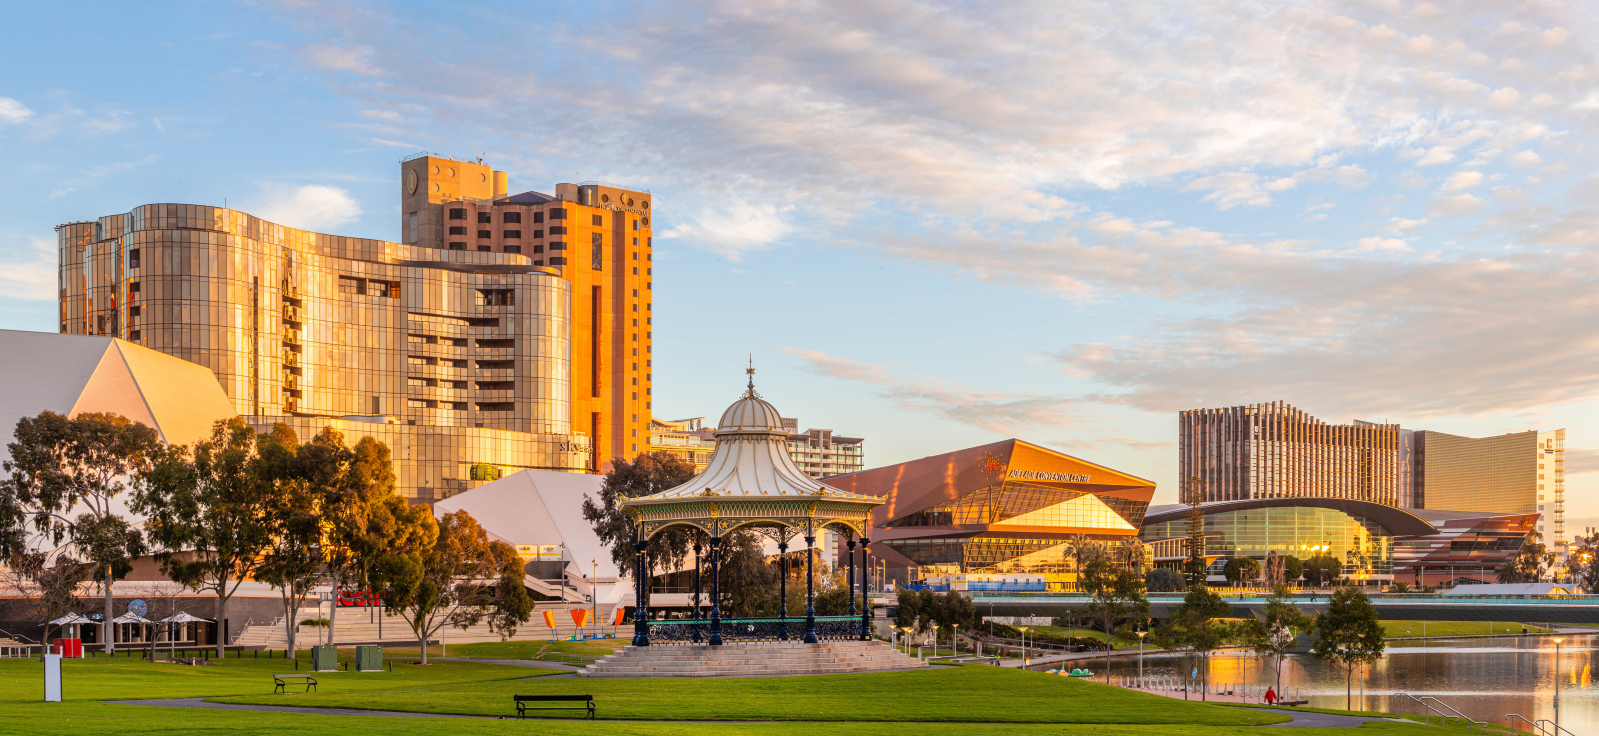 South Australia to Host First Major Tourism Trade Event